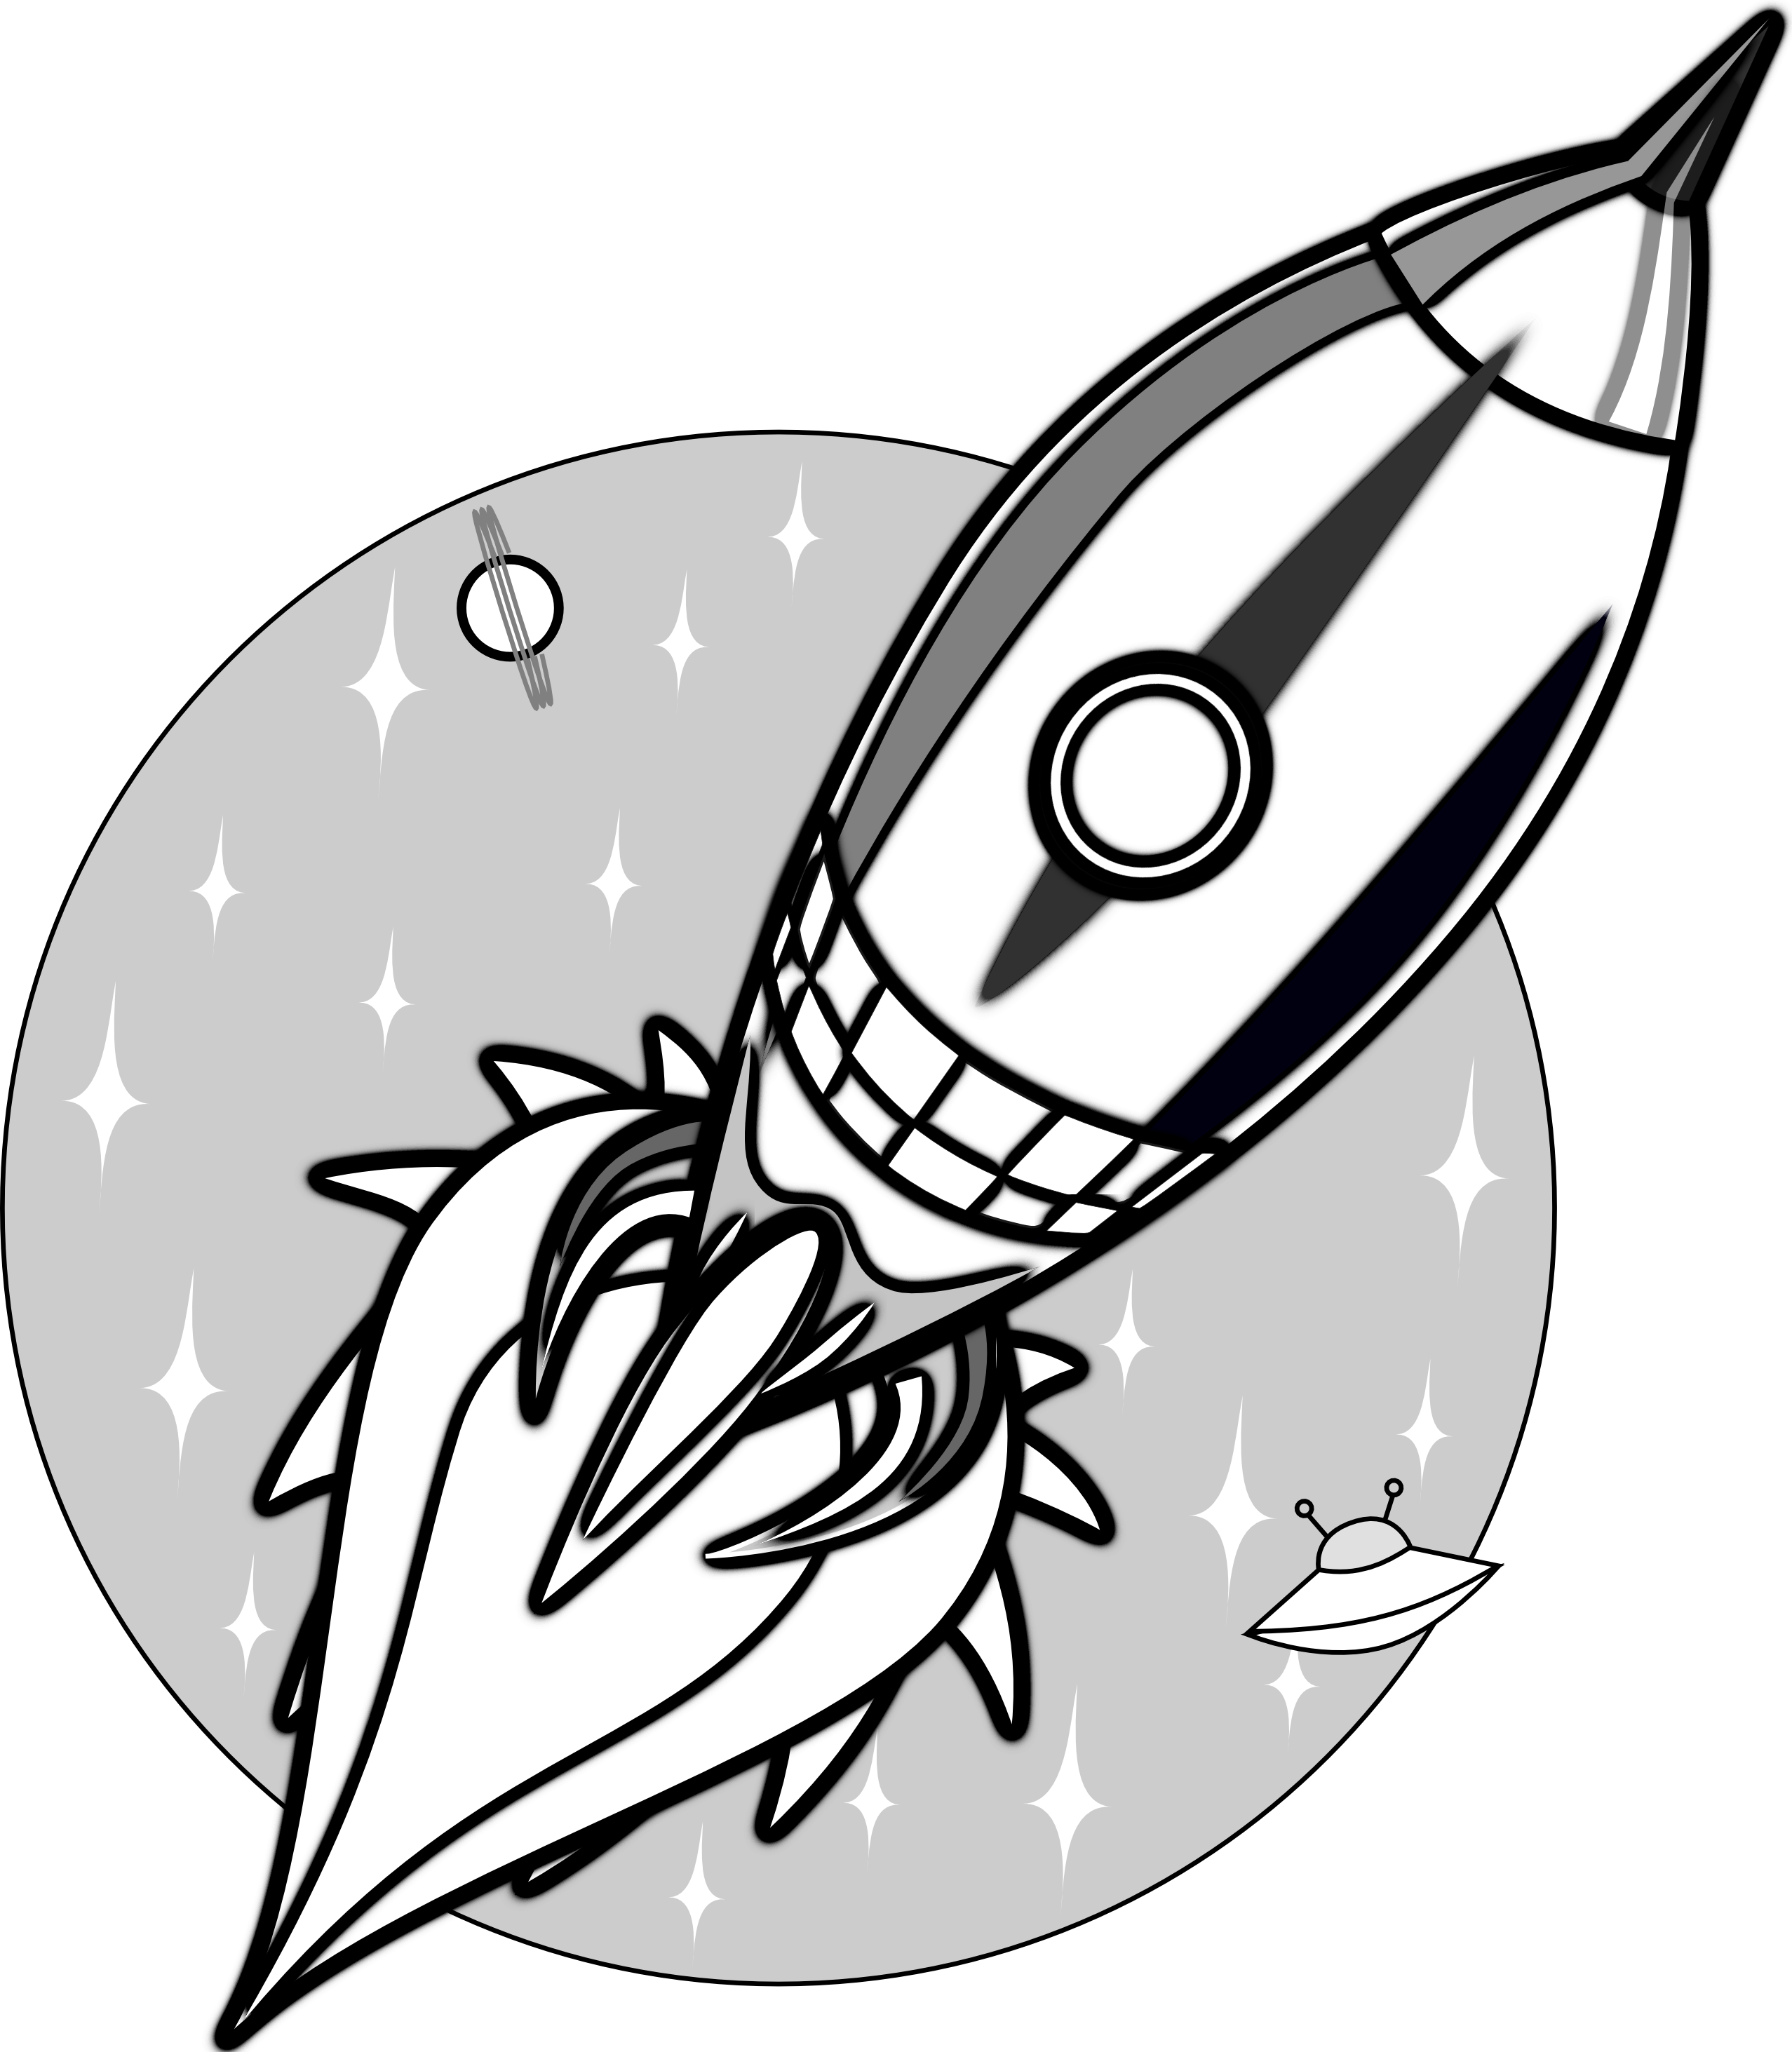 ไฟล์ Rocket โปร่งใส Clip Art | PNG Play